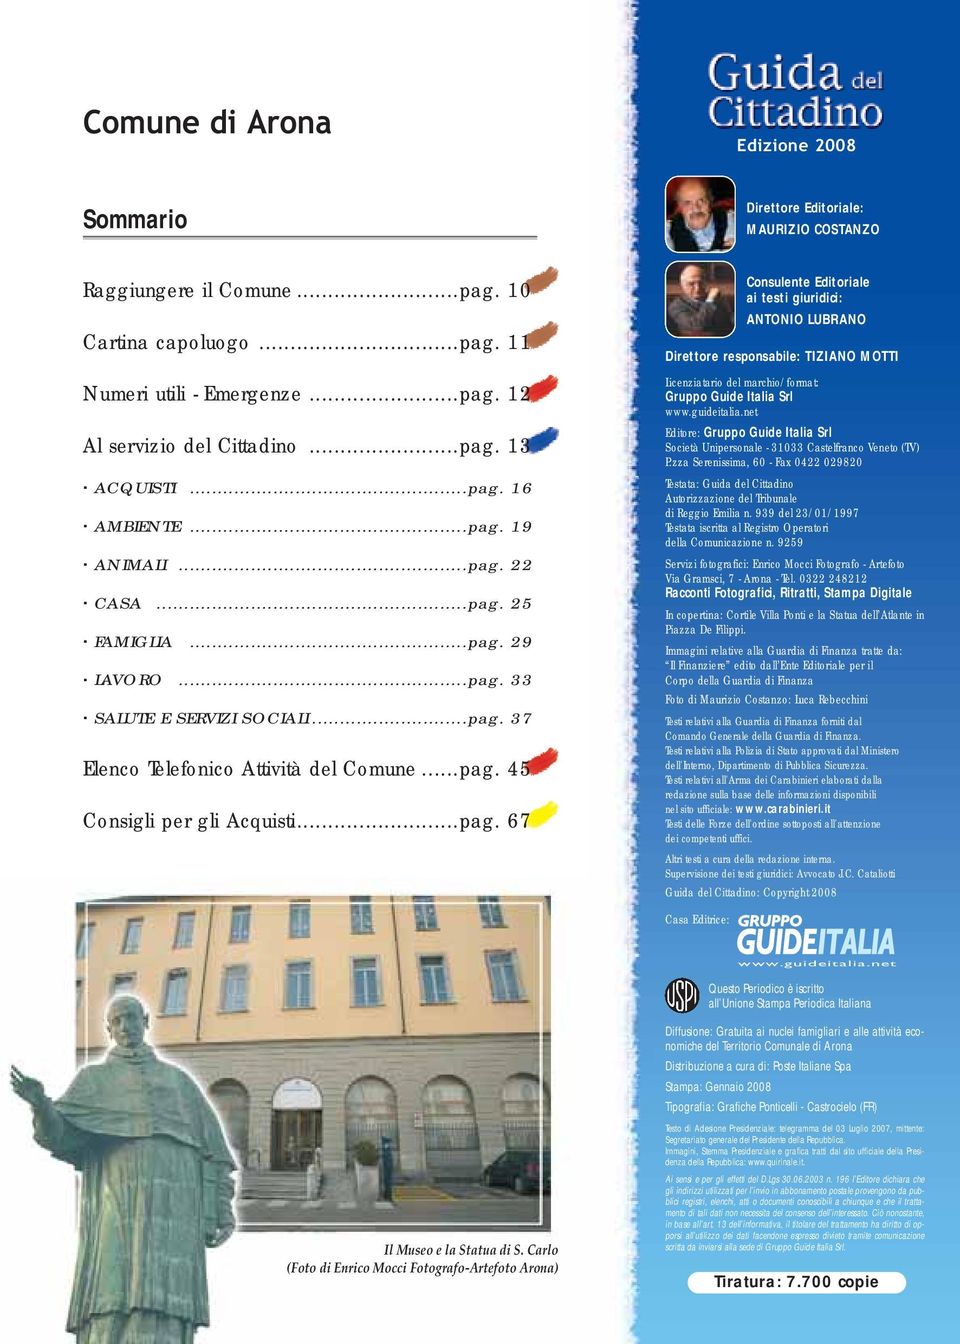 ..pag. 45 Consigli per gli Acquisti...pag. 67 Consulente Editoriale ai testi giuridici: ANTONIO LUBRANO Direttore responsabile: TIZIANO MOTTI Licenziatario del marchio/format: Gruppo Guide Italia Srl www.